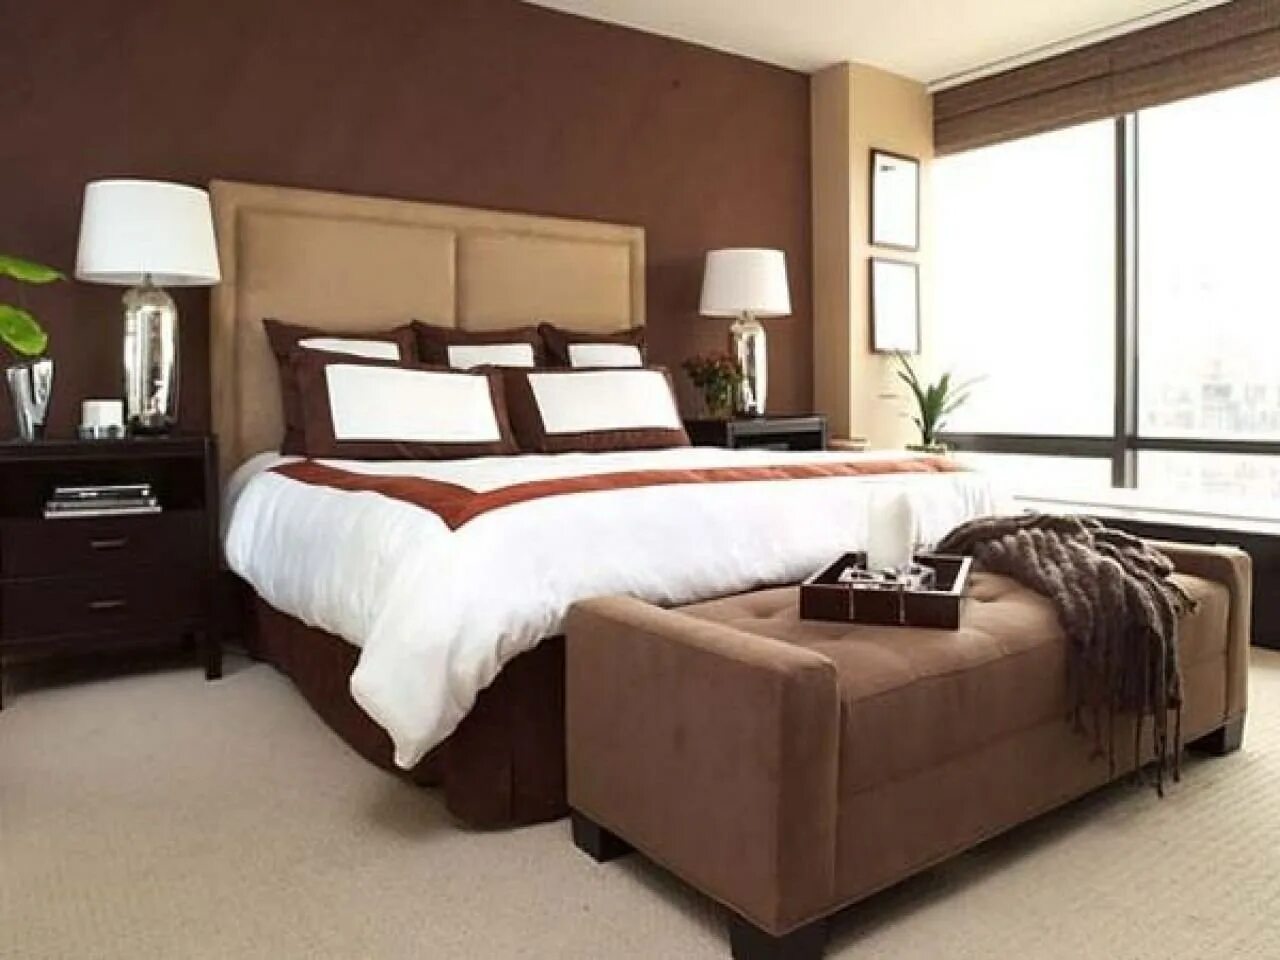 Спальня в коричневых тонах. Спальня в коричневом цвете. Коричневые стены в спальне. Коричневые обои в спальне.